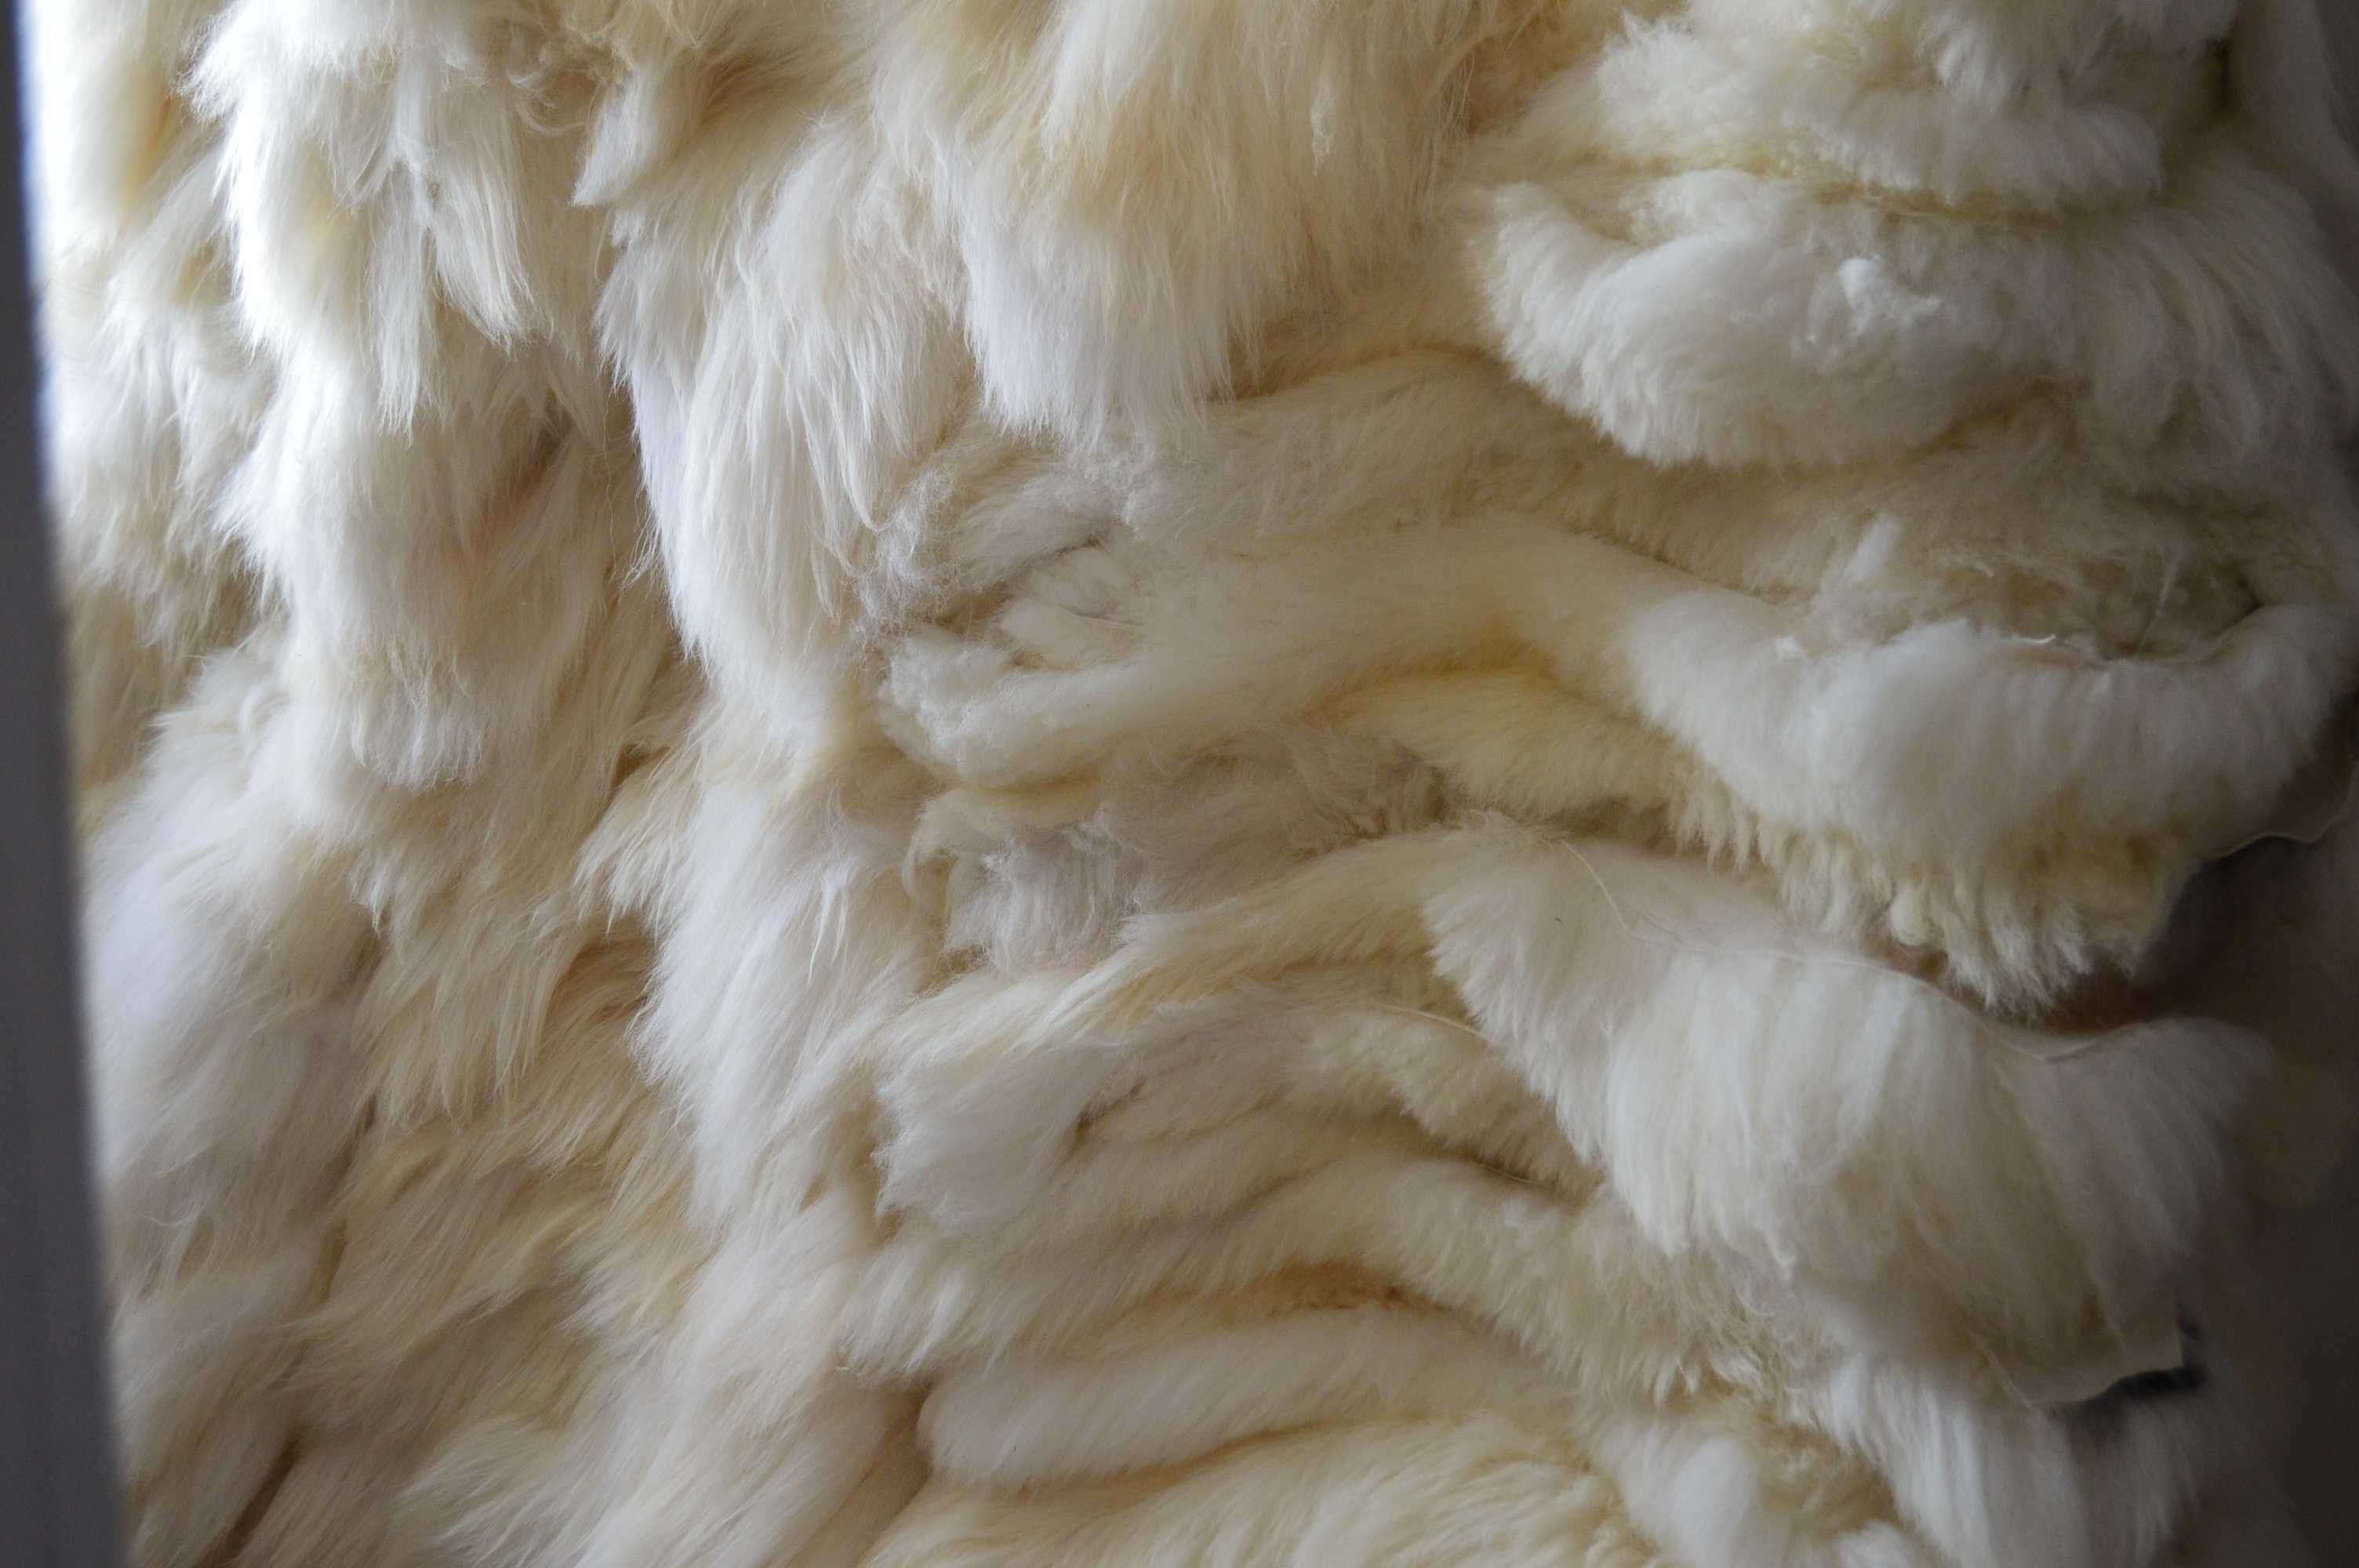 Skóry dekoracyjne owcze sprzedaż hurtowa / Wholesale of sheepskins